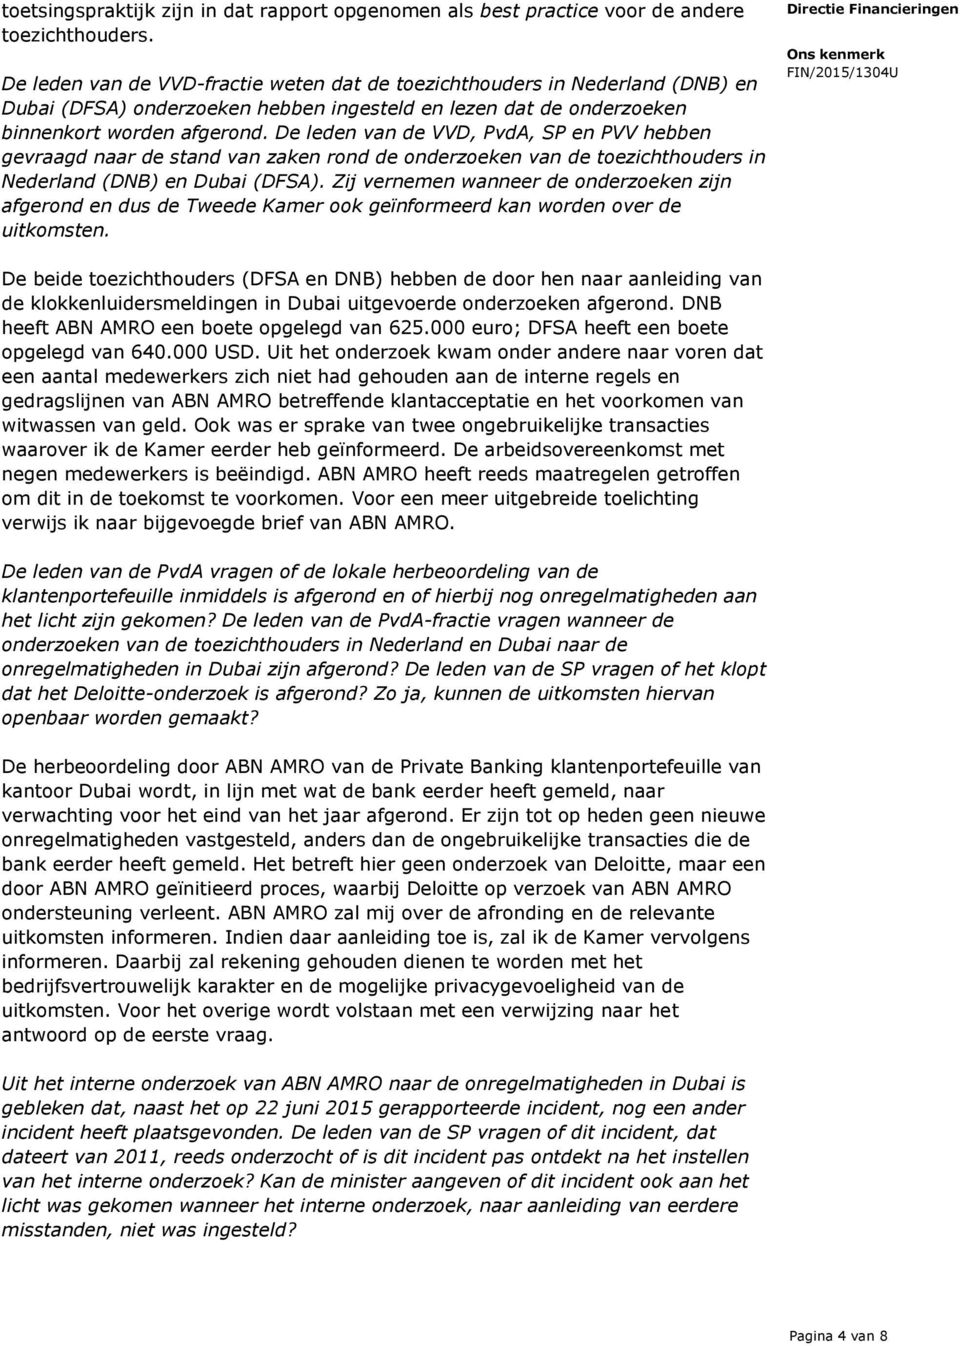 De leden van de VVD, PvdA, SP en PVV hebben gevraagd naar de stand van zaken rond de onderzoeken van de toezichthouders in Nederland (DNB) en Dubai (DFSA).